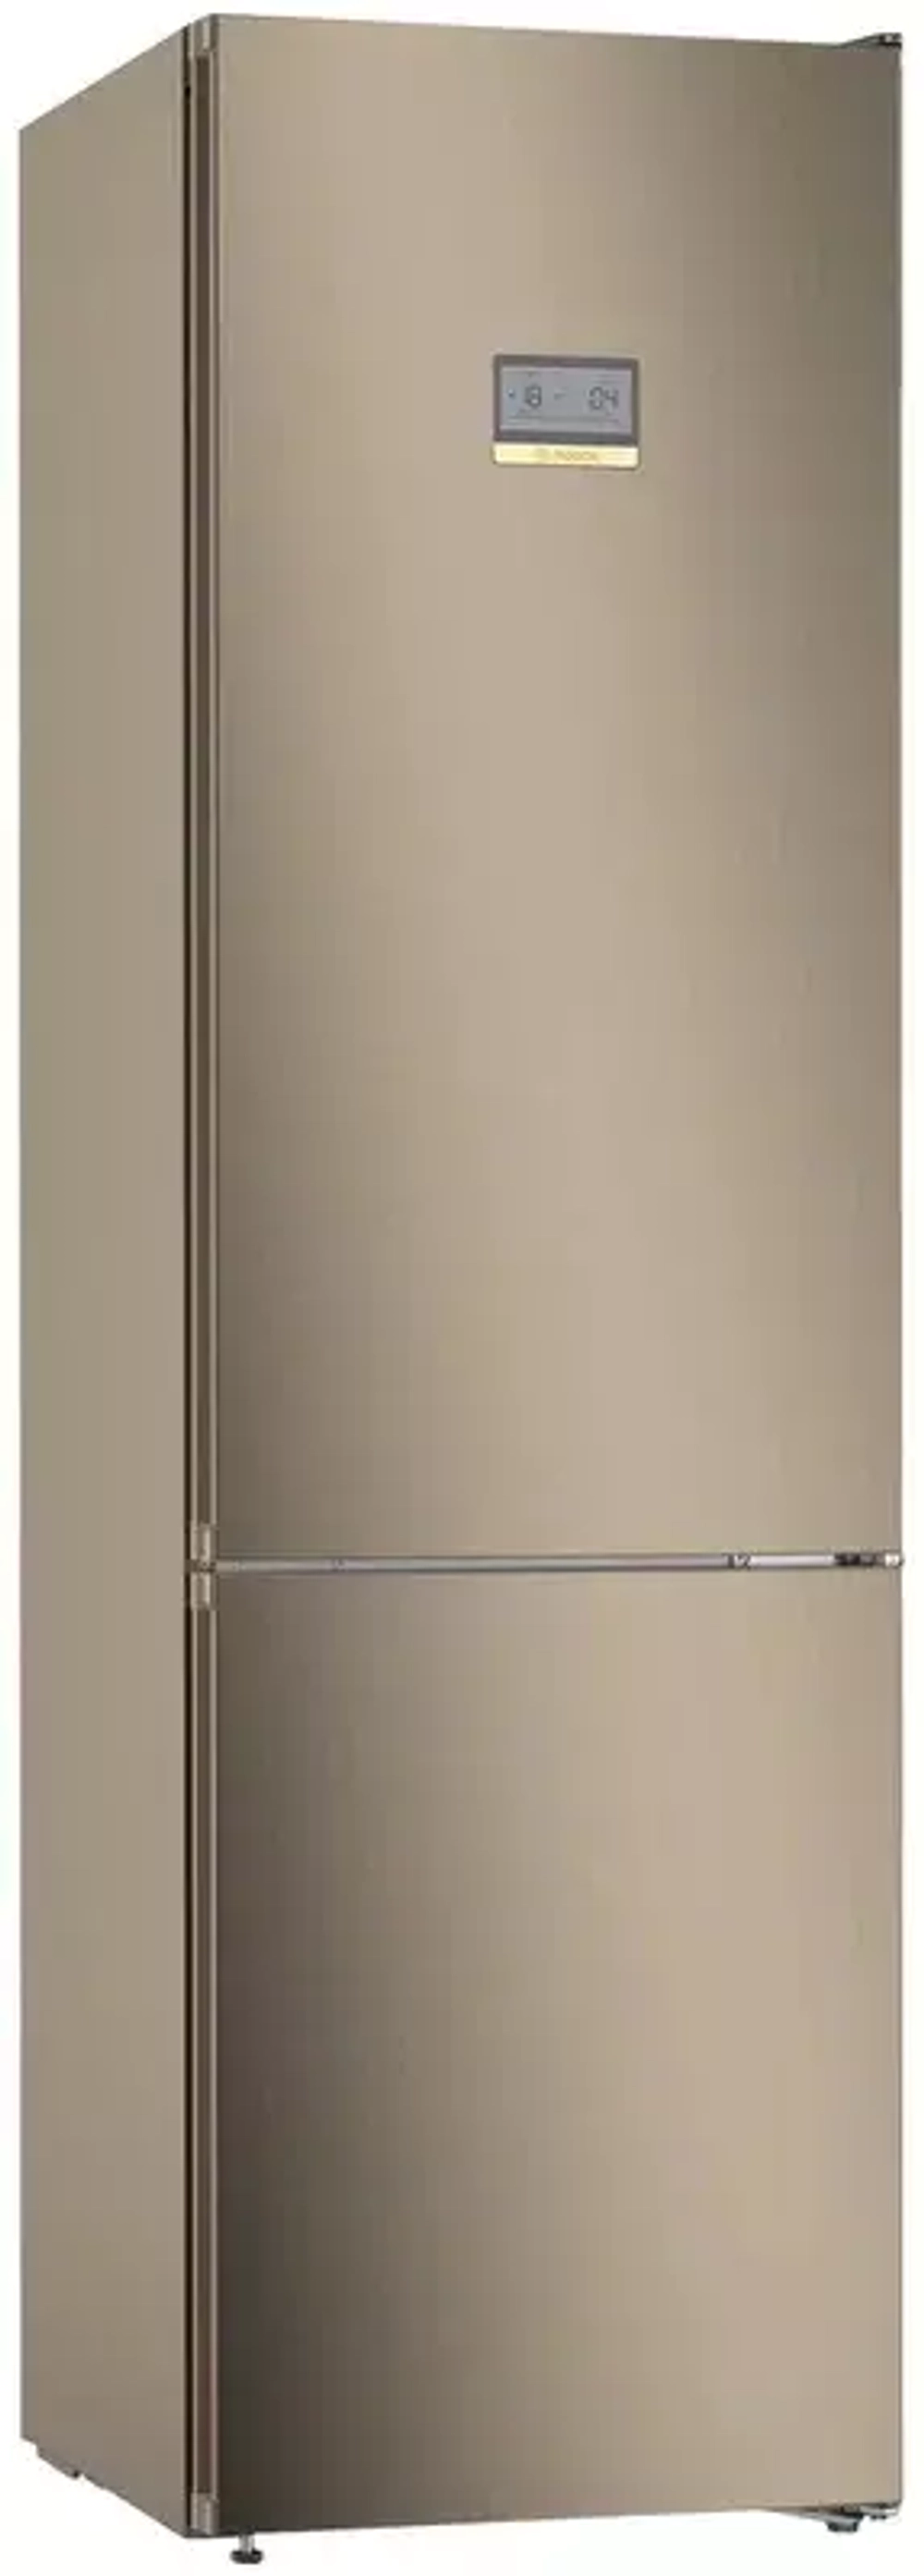 Холодильник с нижней морозильной камерой Bosch KGN39AV31R (YLN)